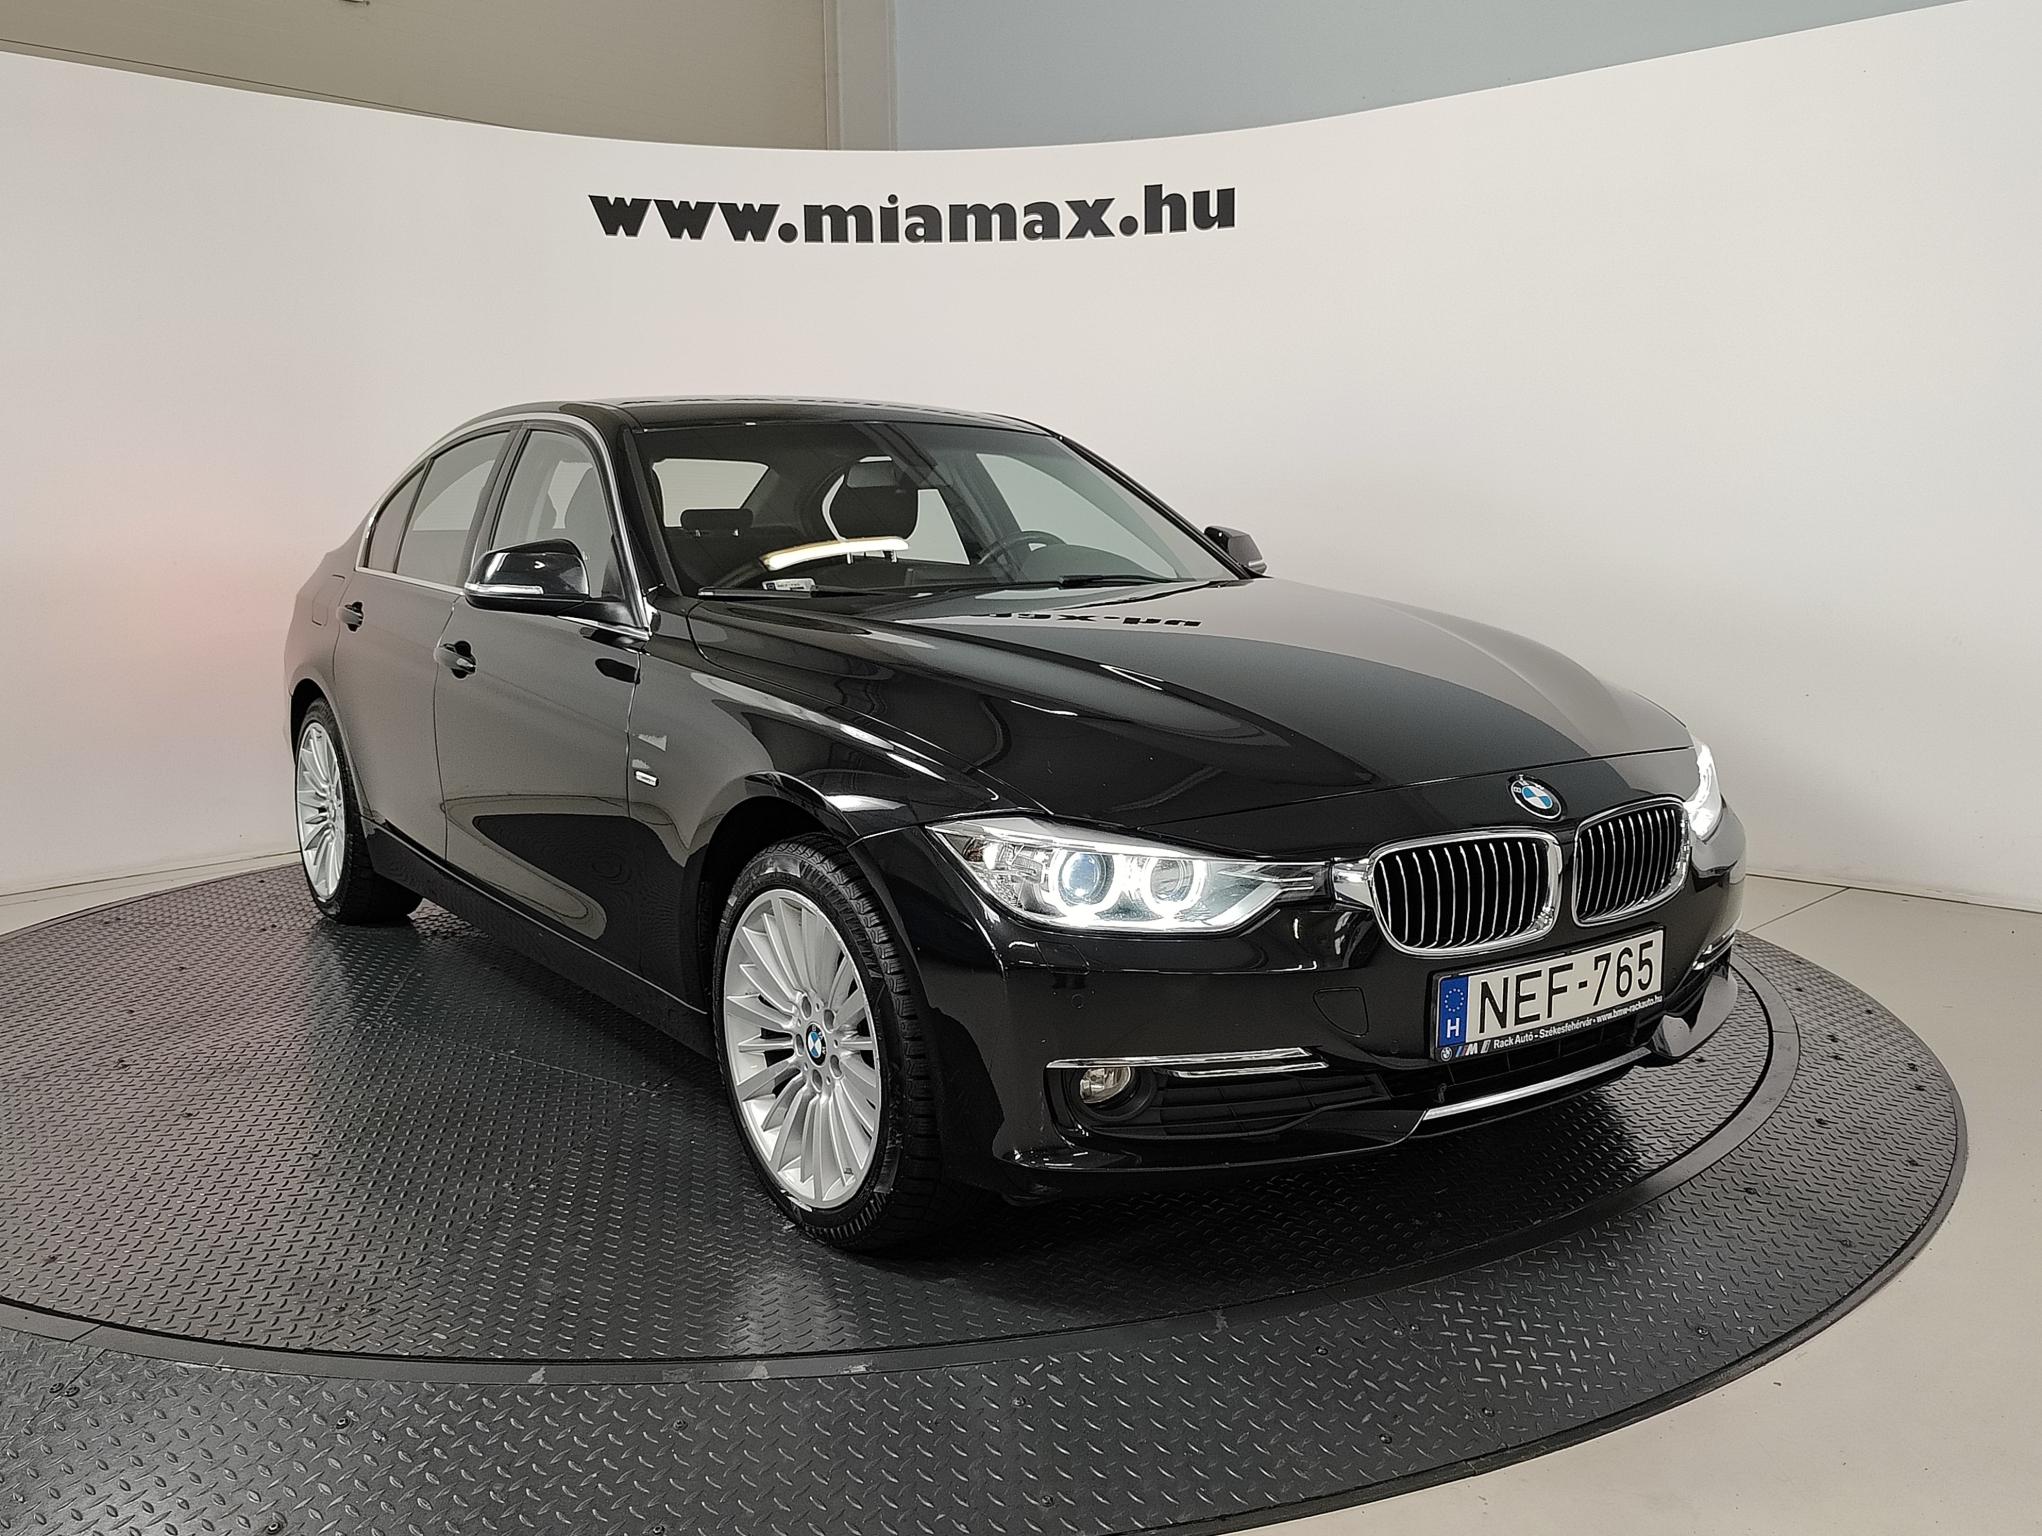 BMW 318d Luxury magyarországi. szervizkönyves. 2 tulaj. kitűnő állapotban